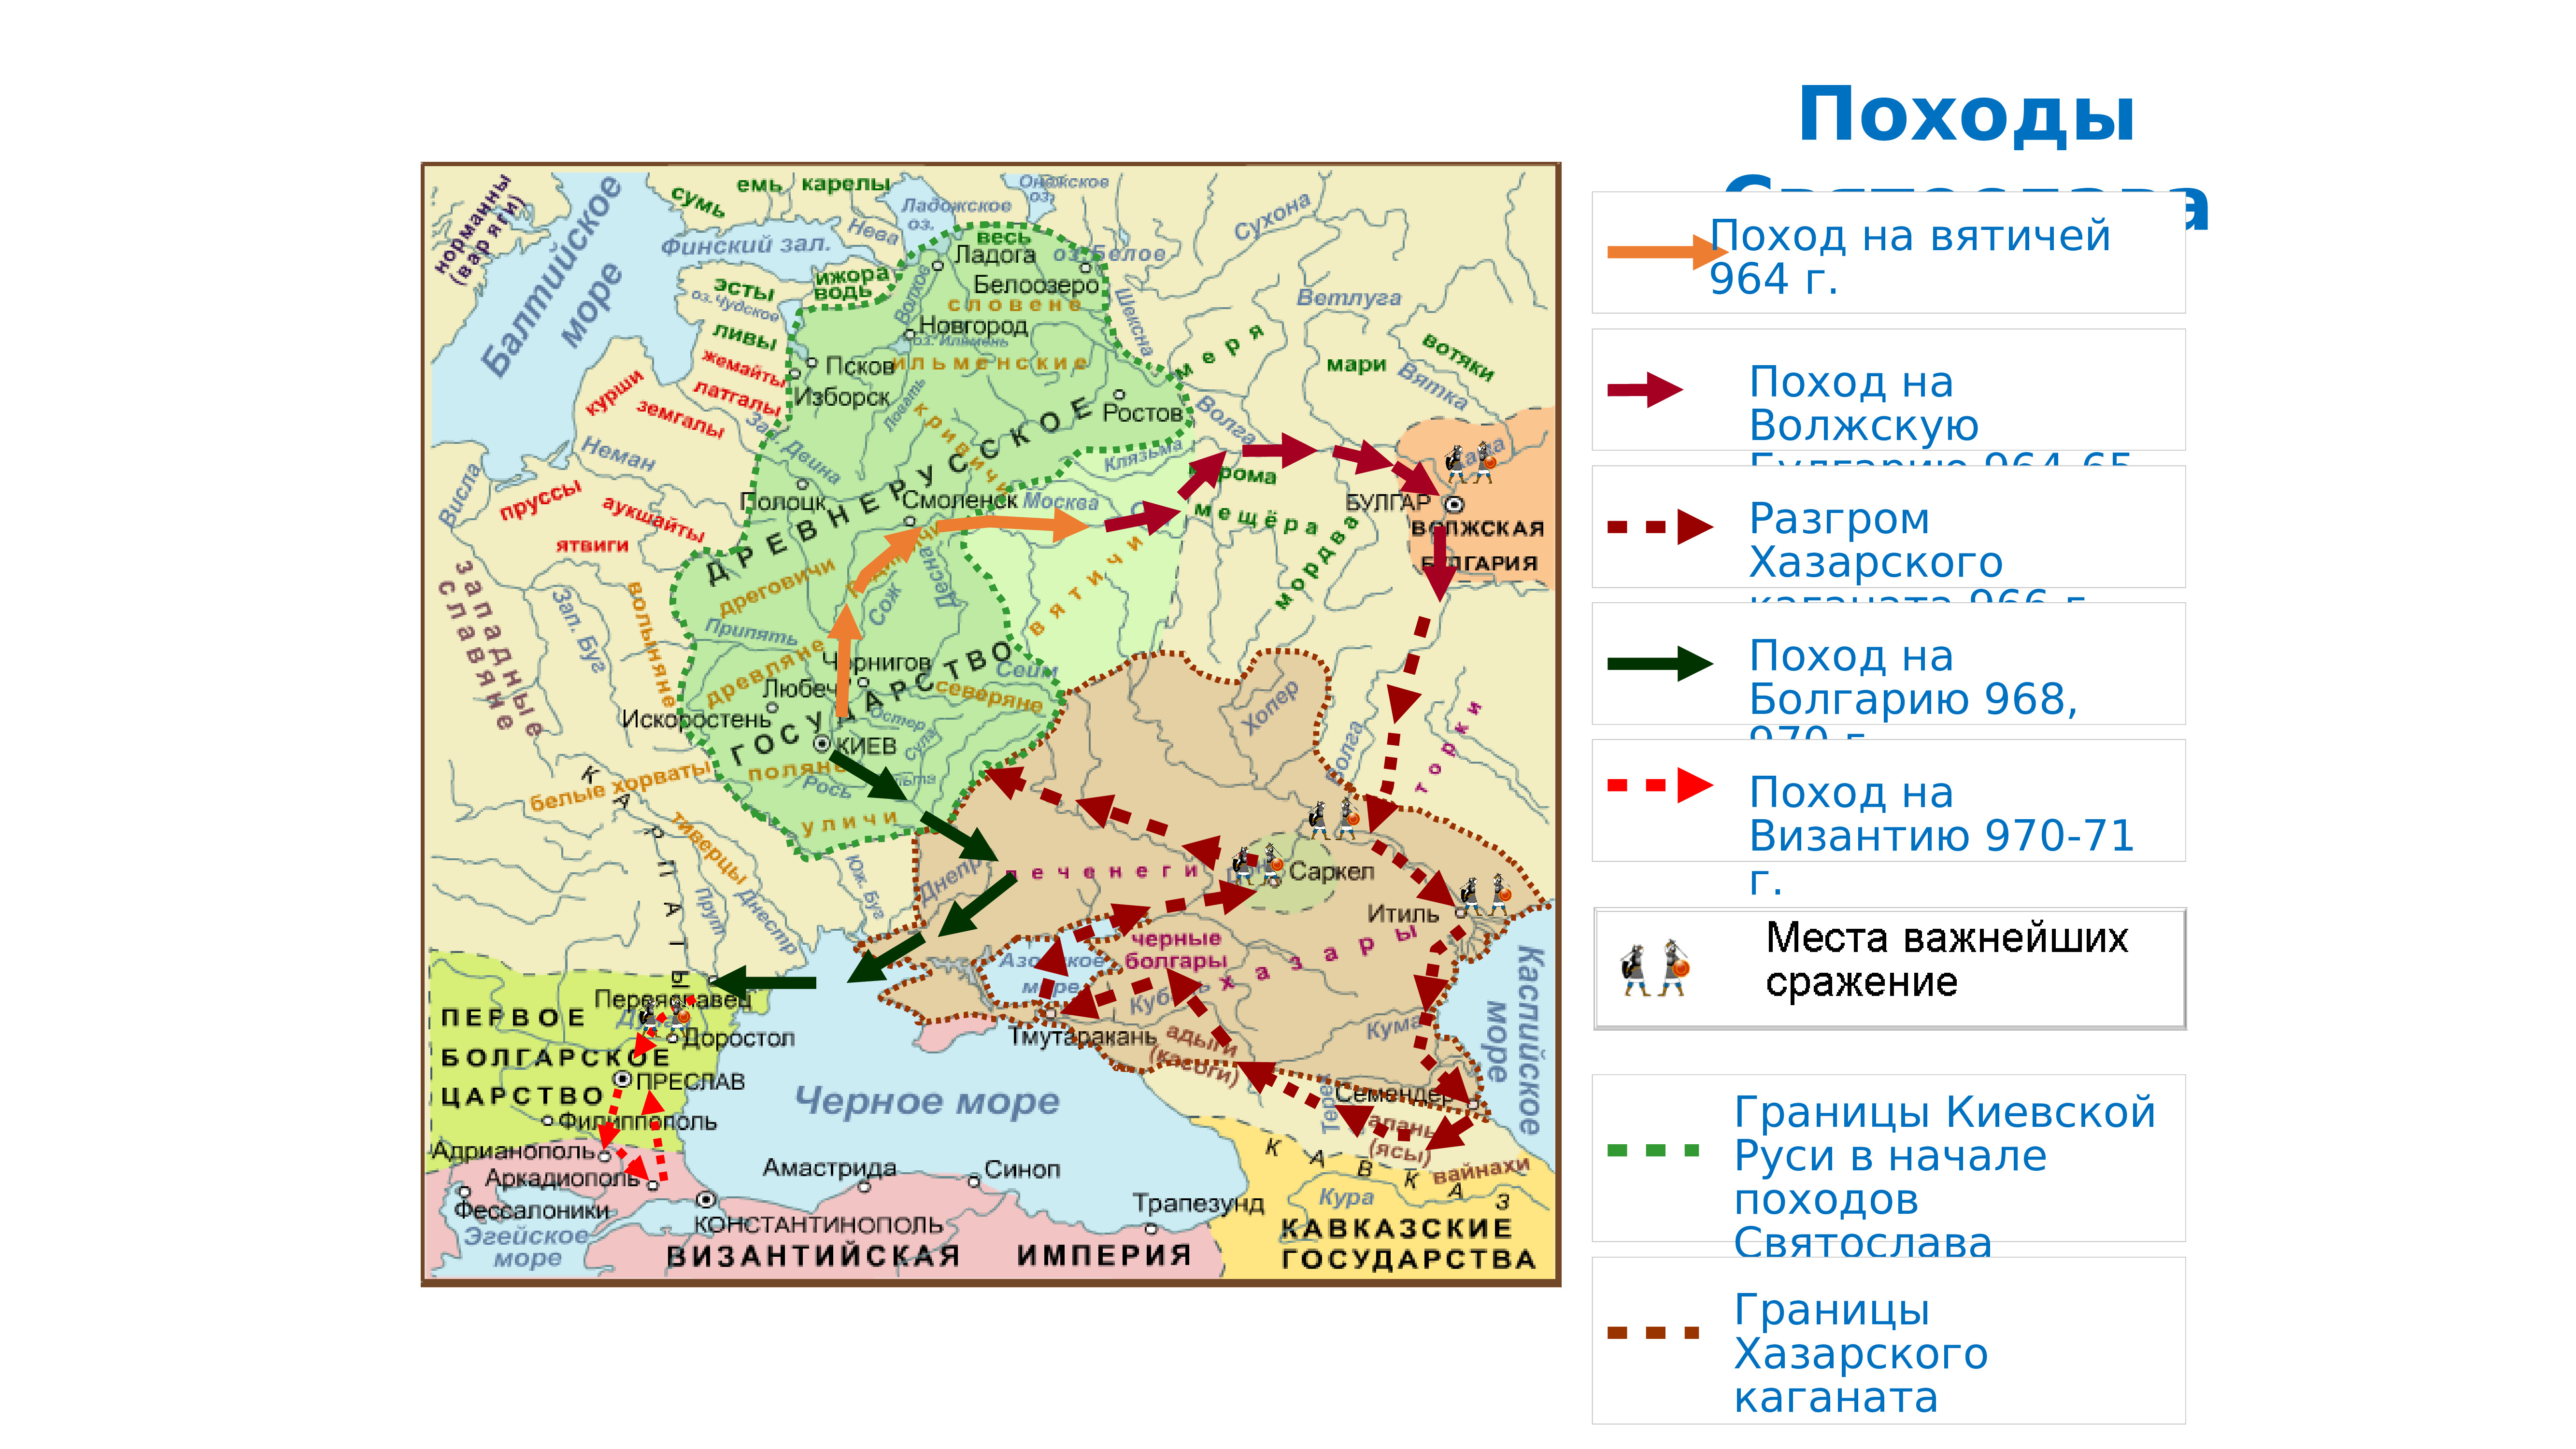 Контурная карта походы Святослава 964-972